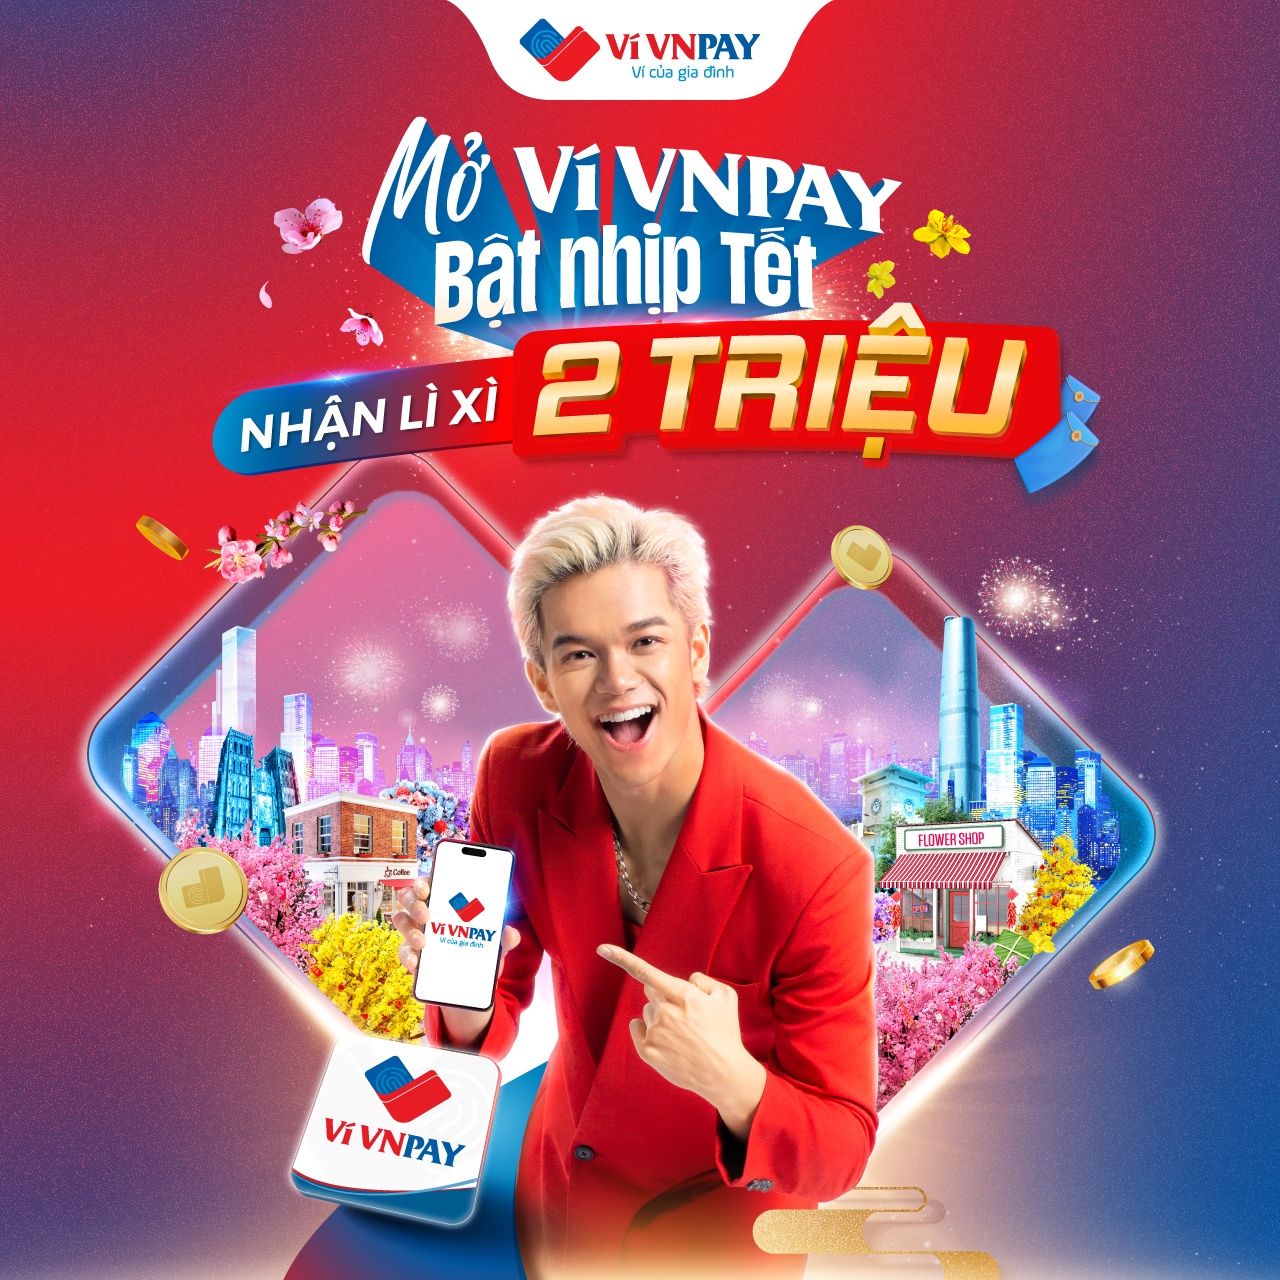 Ví VNPAY đứng top 1 trên App Store Việt Nam mảng ví điện tử - ảnh 3